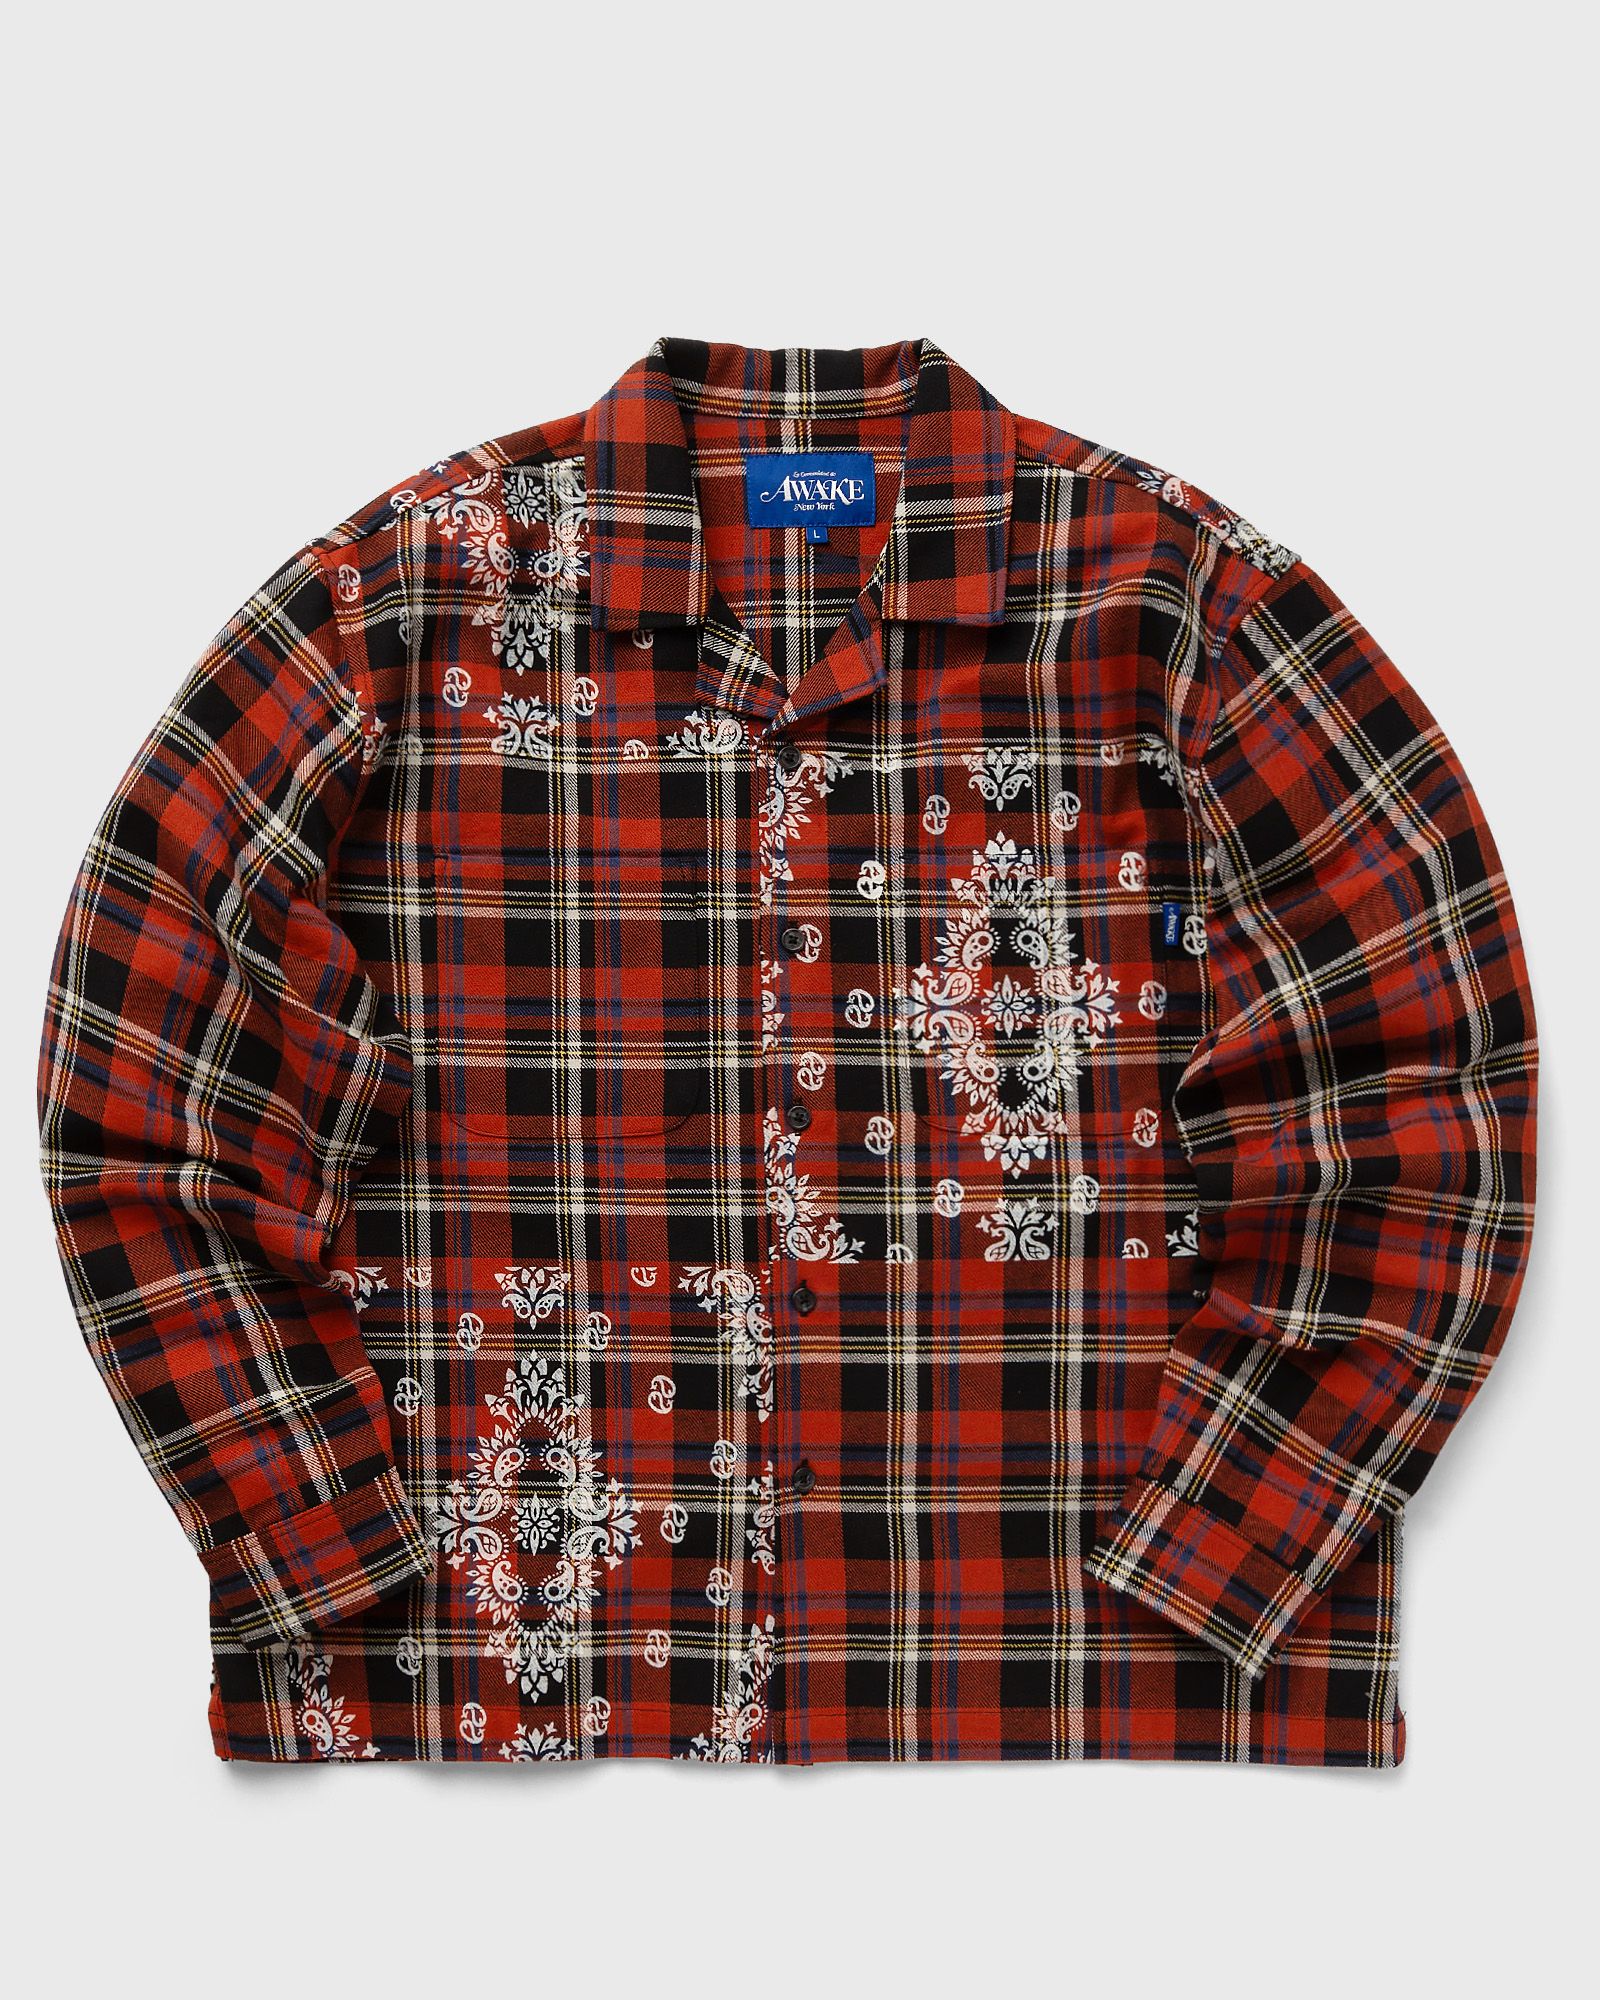 Awake - paisley printed flannel shirt men longsleeves black|red in größe:xl